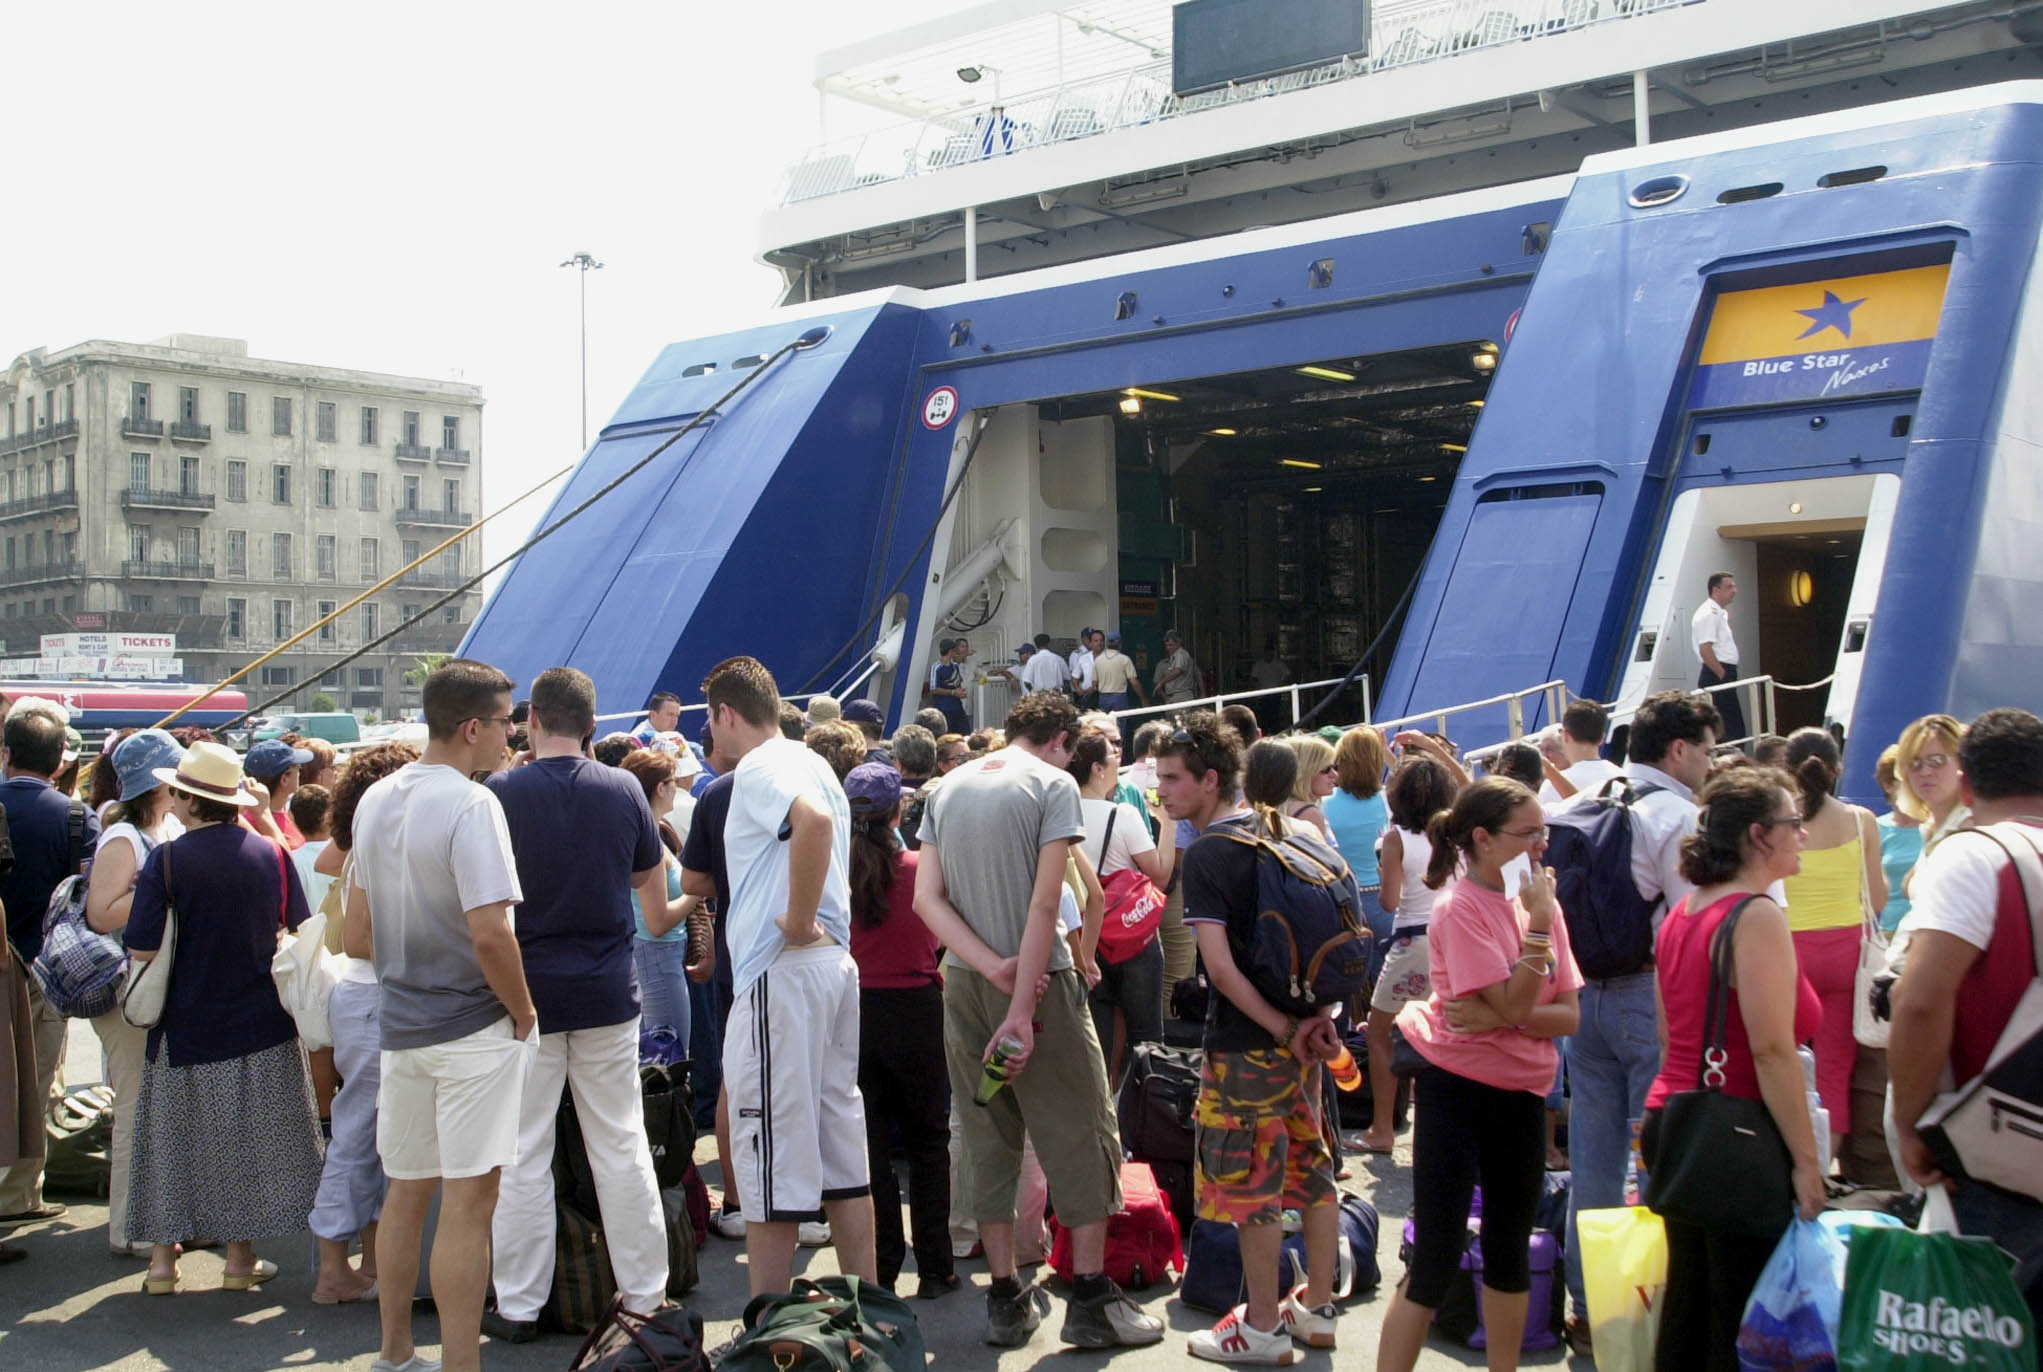 ΕΛΣΤΑΤ: Αυξήθηκε η διακίνηση επιβατών στα ελληνικά λιμάνια το δ’ τρίμηνο 2013